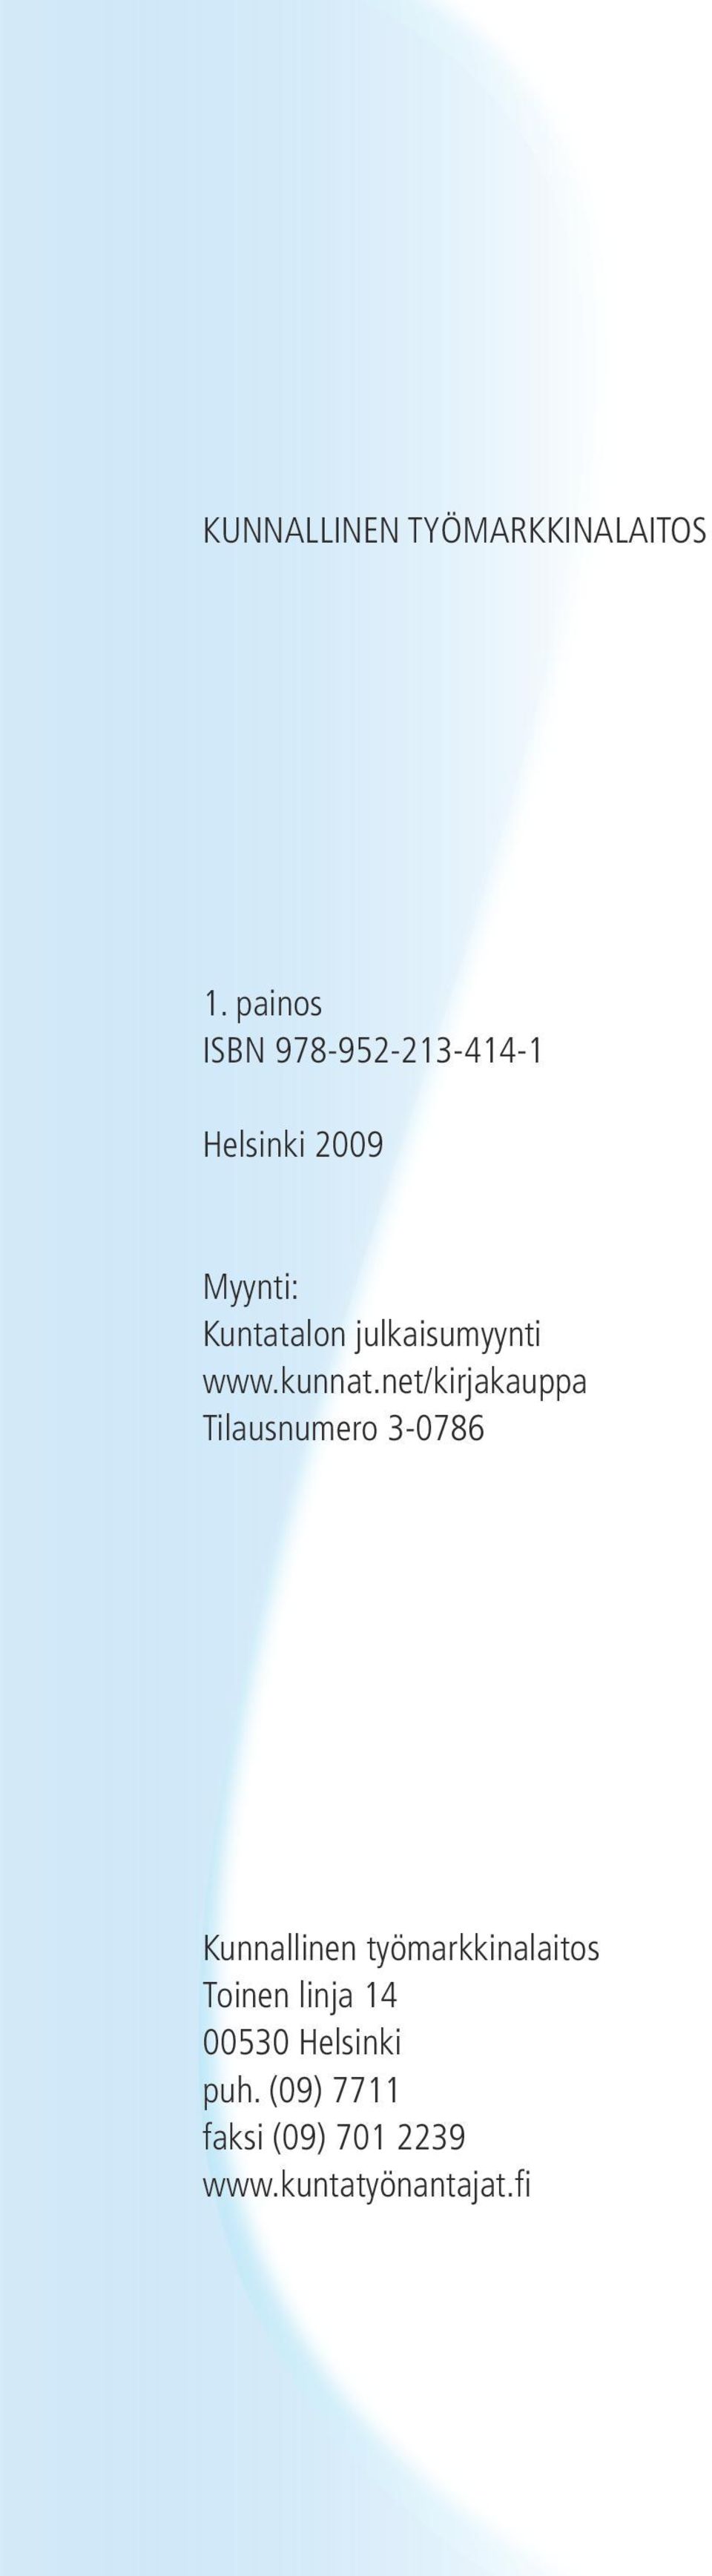 julkaisumyynti www.kunnat.